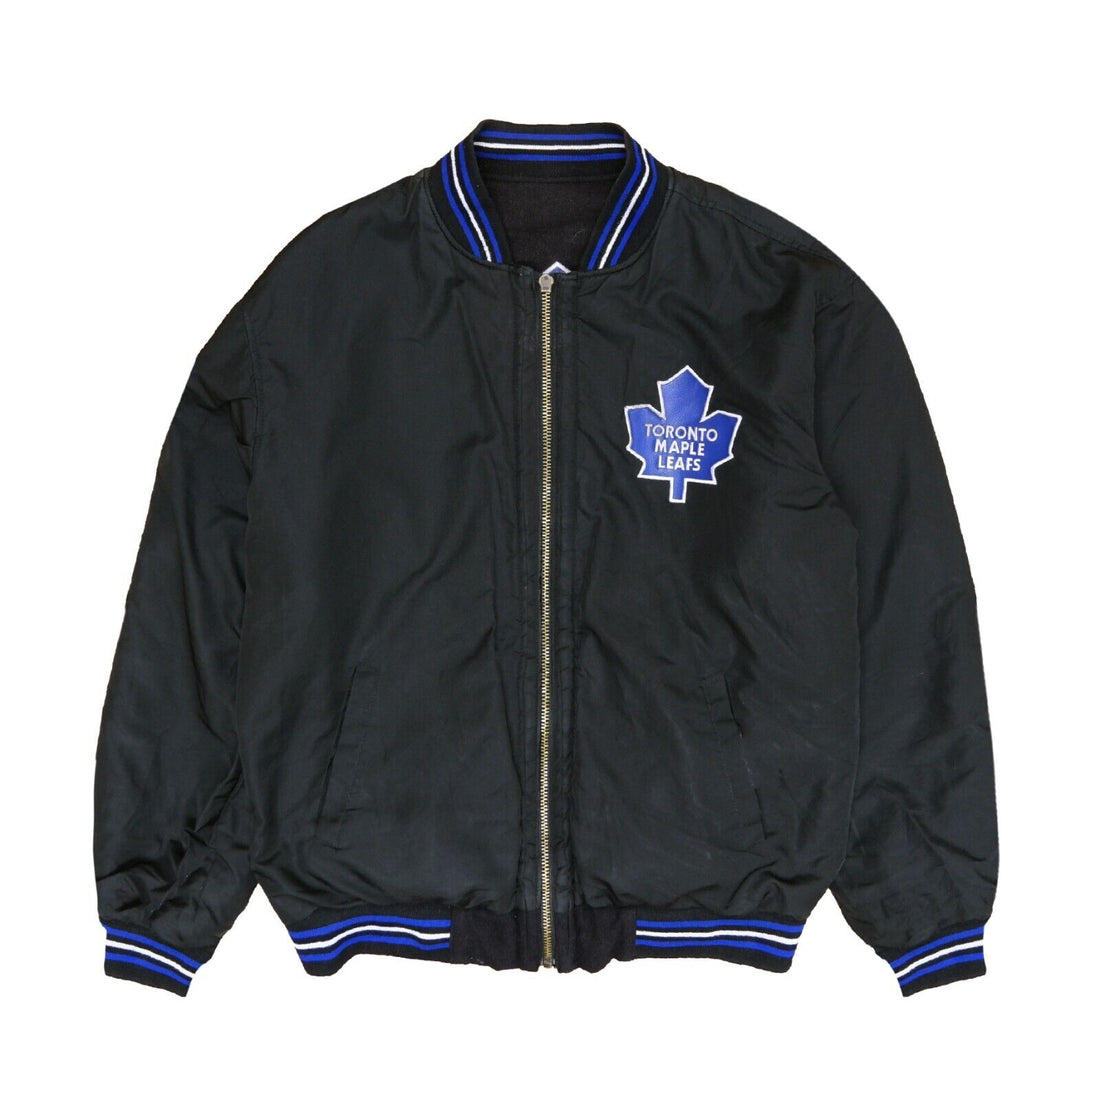 NHL Toronto Maple Leafs Black White Leather Bomber Jacket